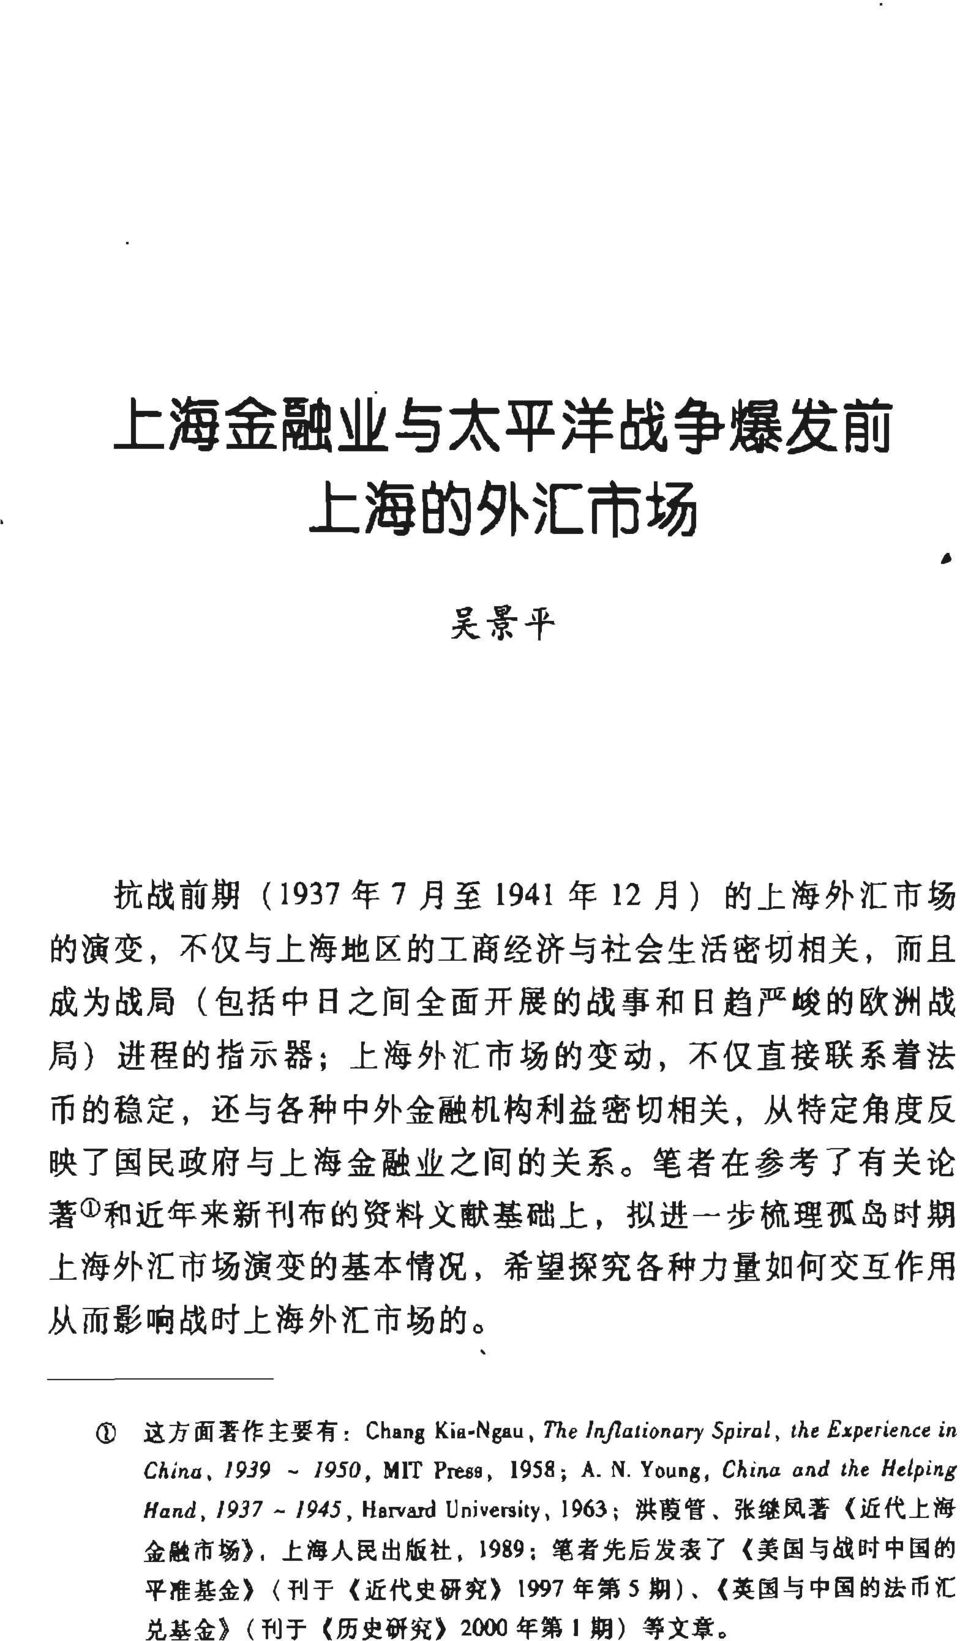 基 础 上, 拟 进 一 步 梳 理 孤 岛 时 期 上 海 外 汇 市 场 演 变 的 基 本 情 况, 希 望 探 究 各 种 力 量 如 何 交 互 作 用 从 而 影 响 战 时 上 海 外 汇 市 场 的 1 远 方 面 著 作 主 要 有 Chaßg K 叶 Ngau, The InjlaliQnary Spiral, tht Exptritnce in China, 1939